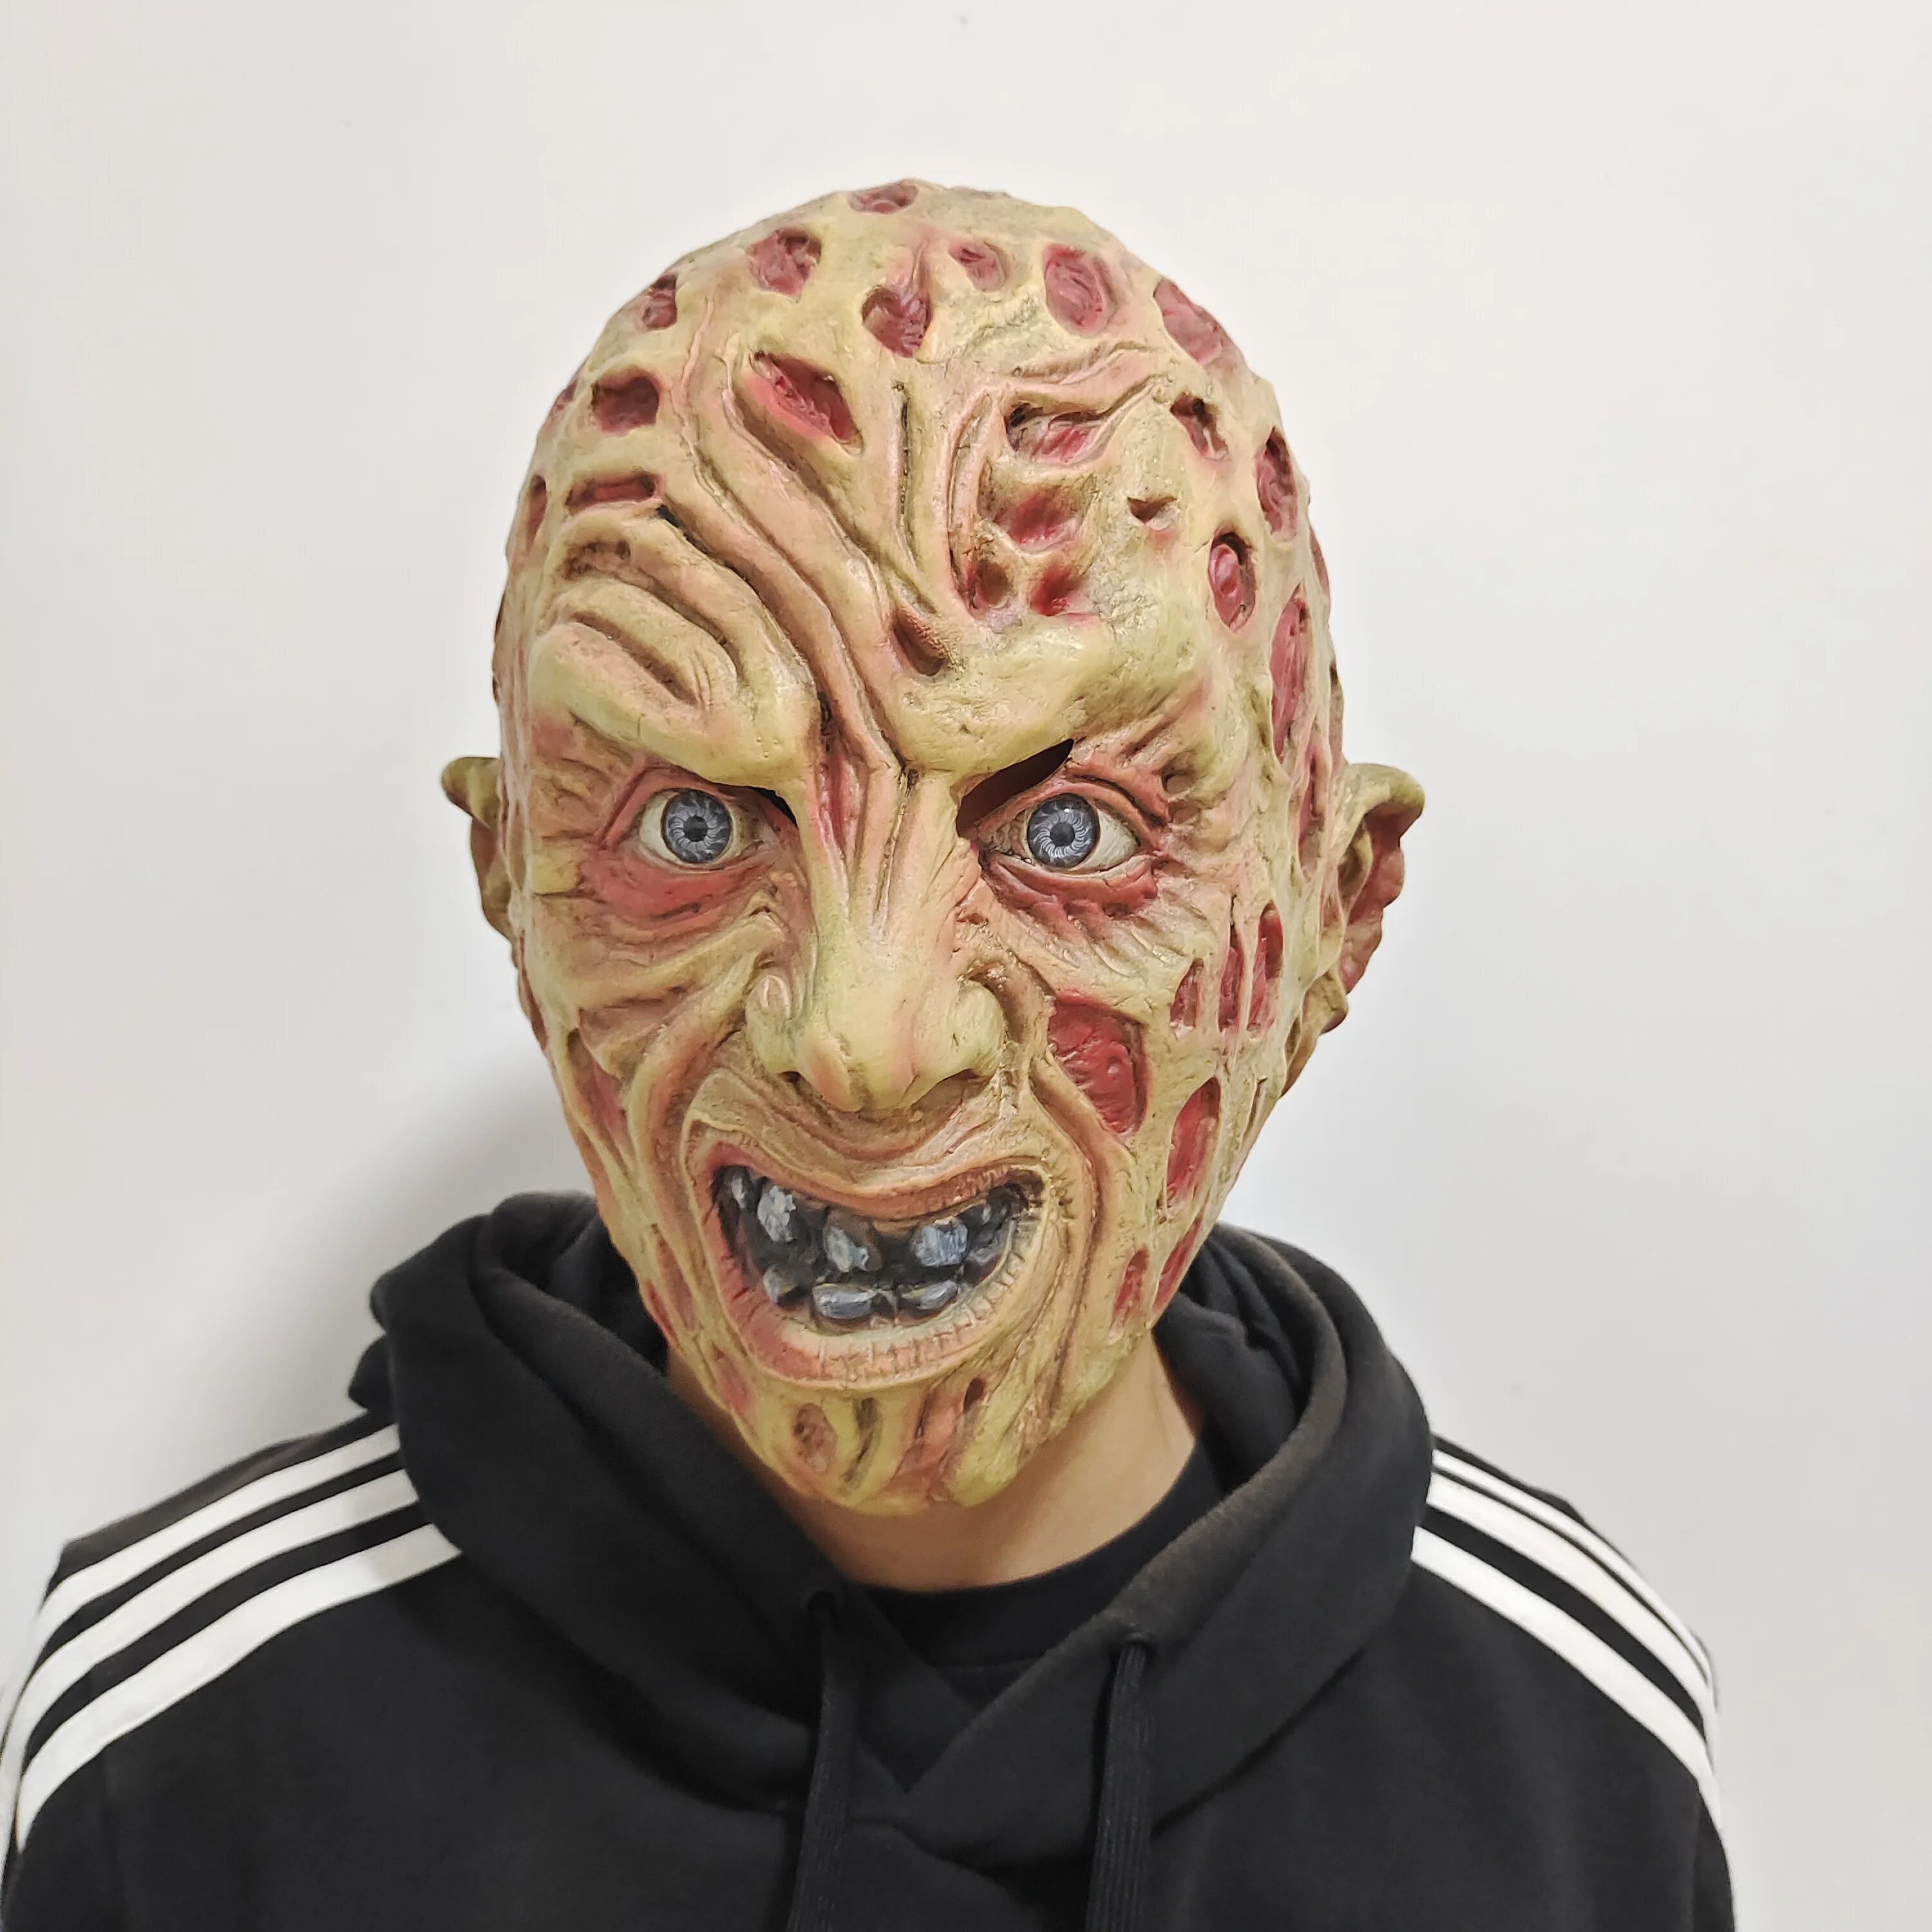 

Страшная маска на Хэллоуин, Фредди Крюгер, хеллоуин, демон, страшный монстр, полная голова, латексная ужасная маска от зла для Хэллоуина, костюм